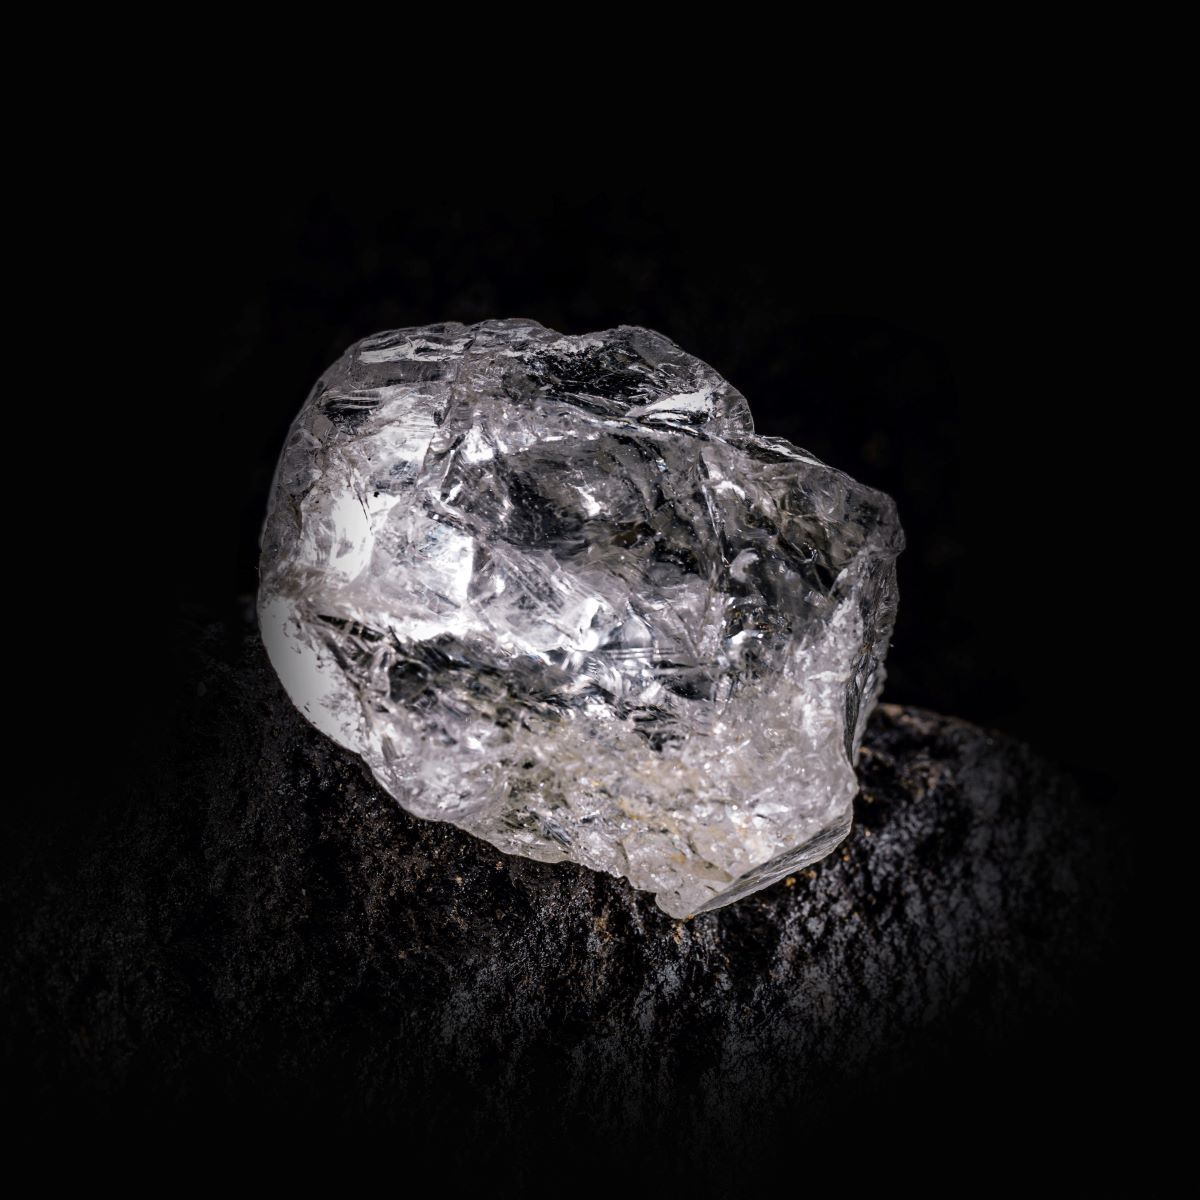 りダイヤモンド原石のリアル画像。